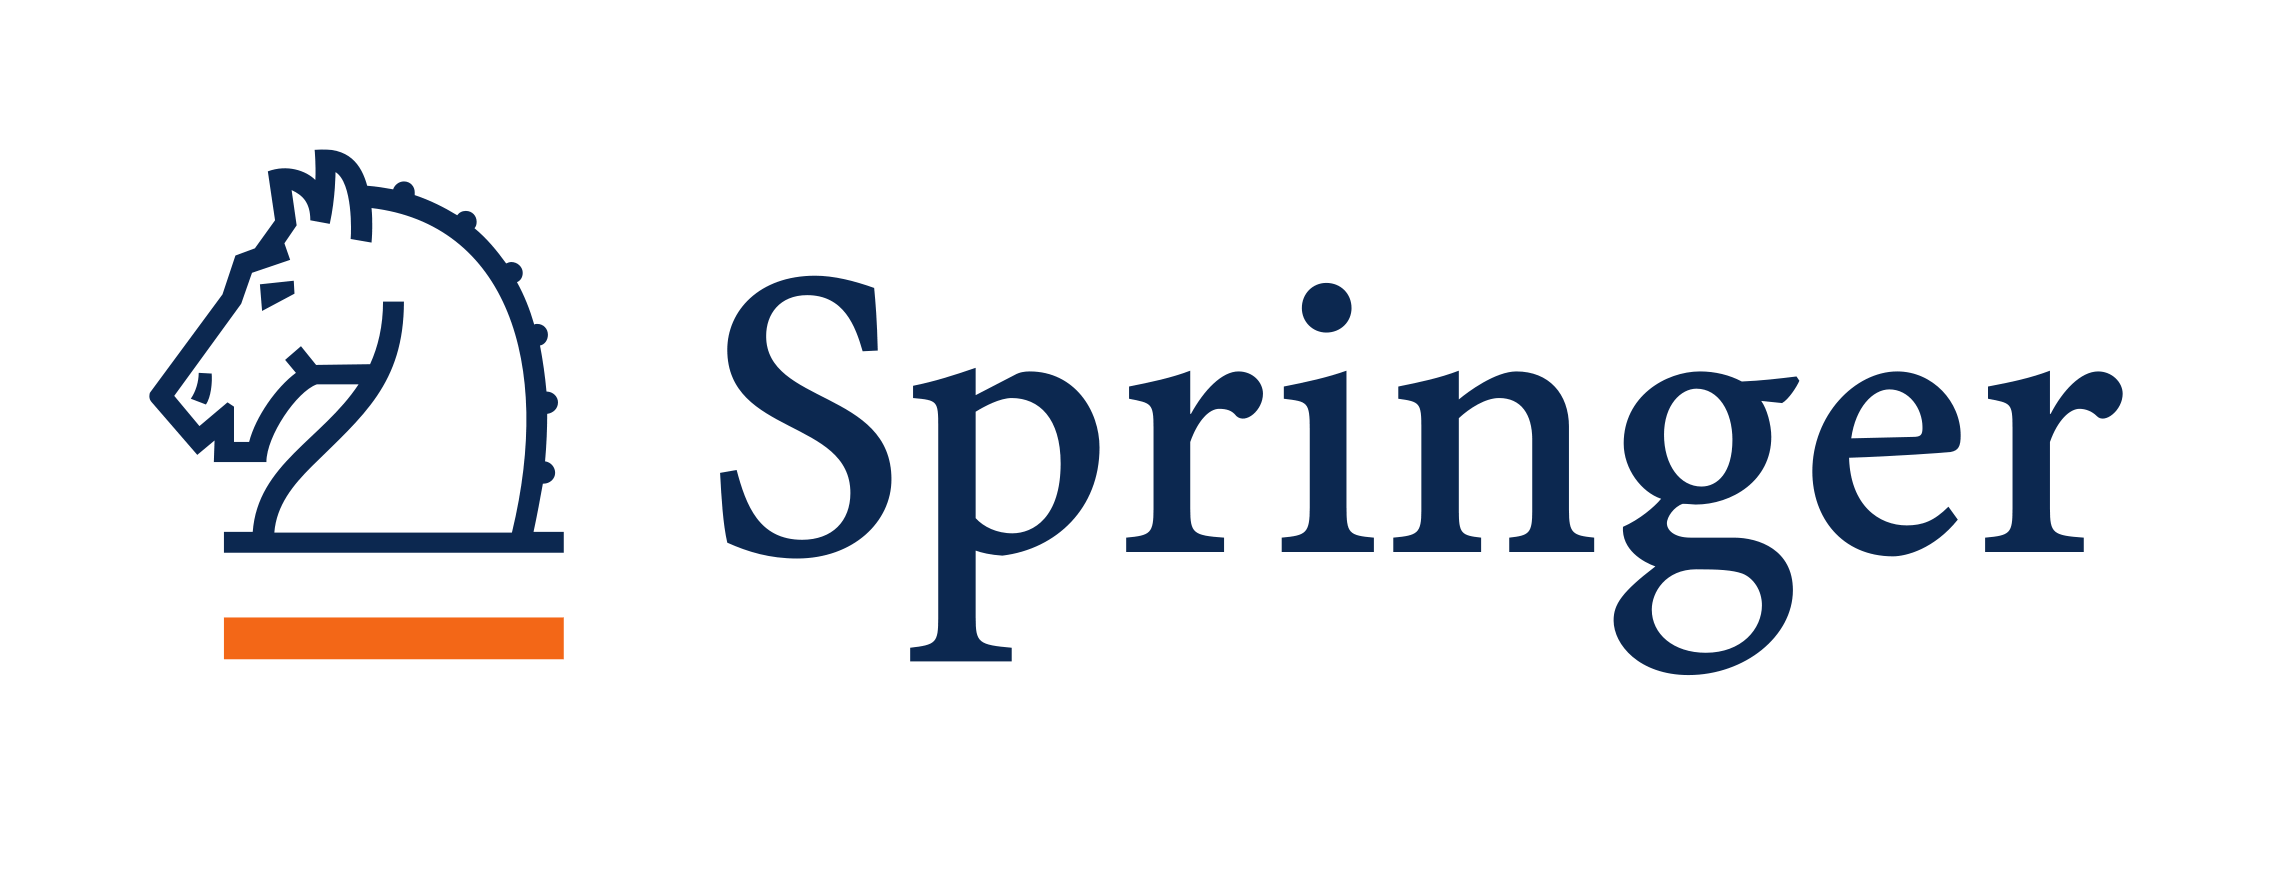 Https link springer com. Издательство Springer. Издательства Springer nature. Springer лого. Springer nature логотип.